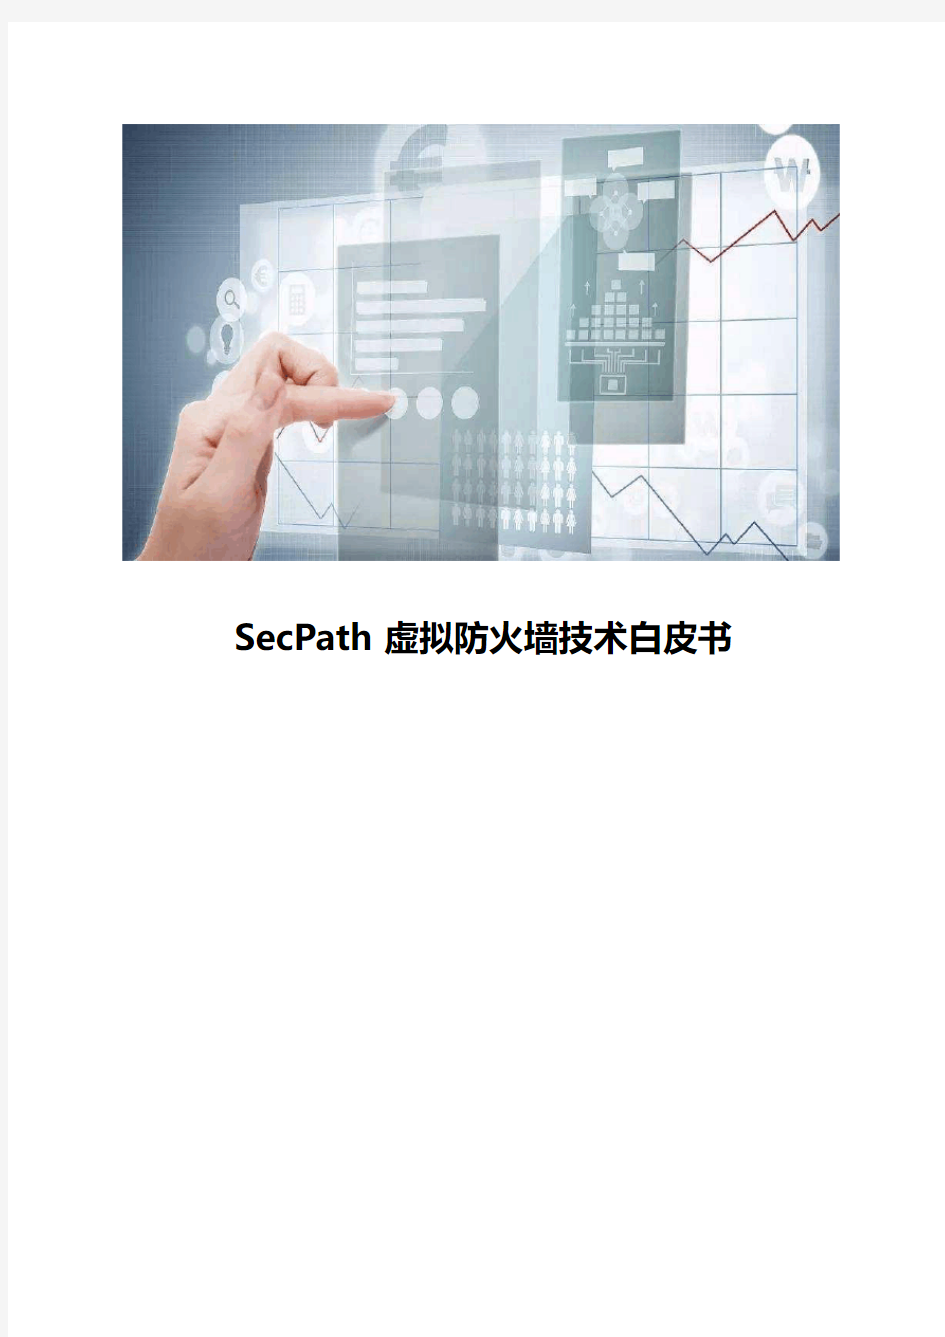 SecPath虚拟防火墙技术白皮书